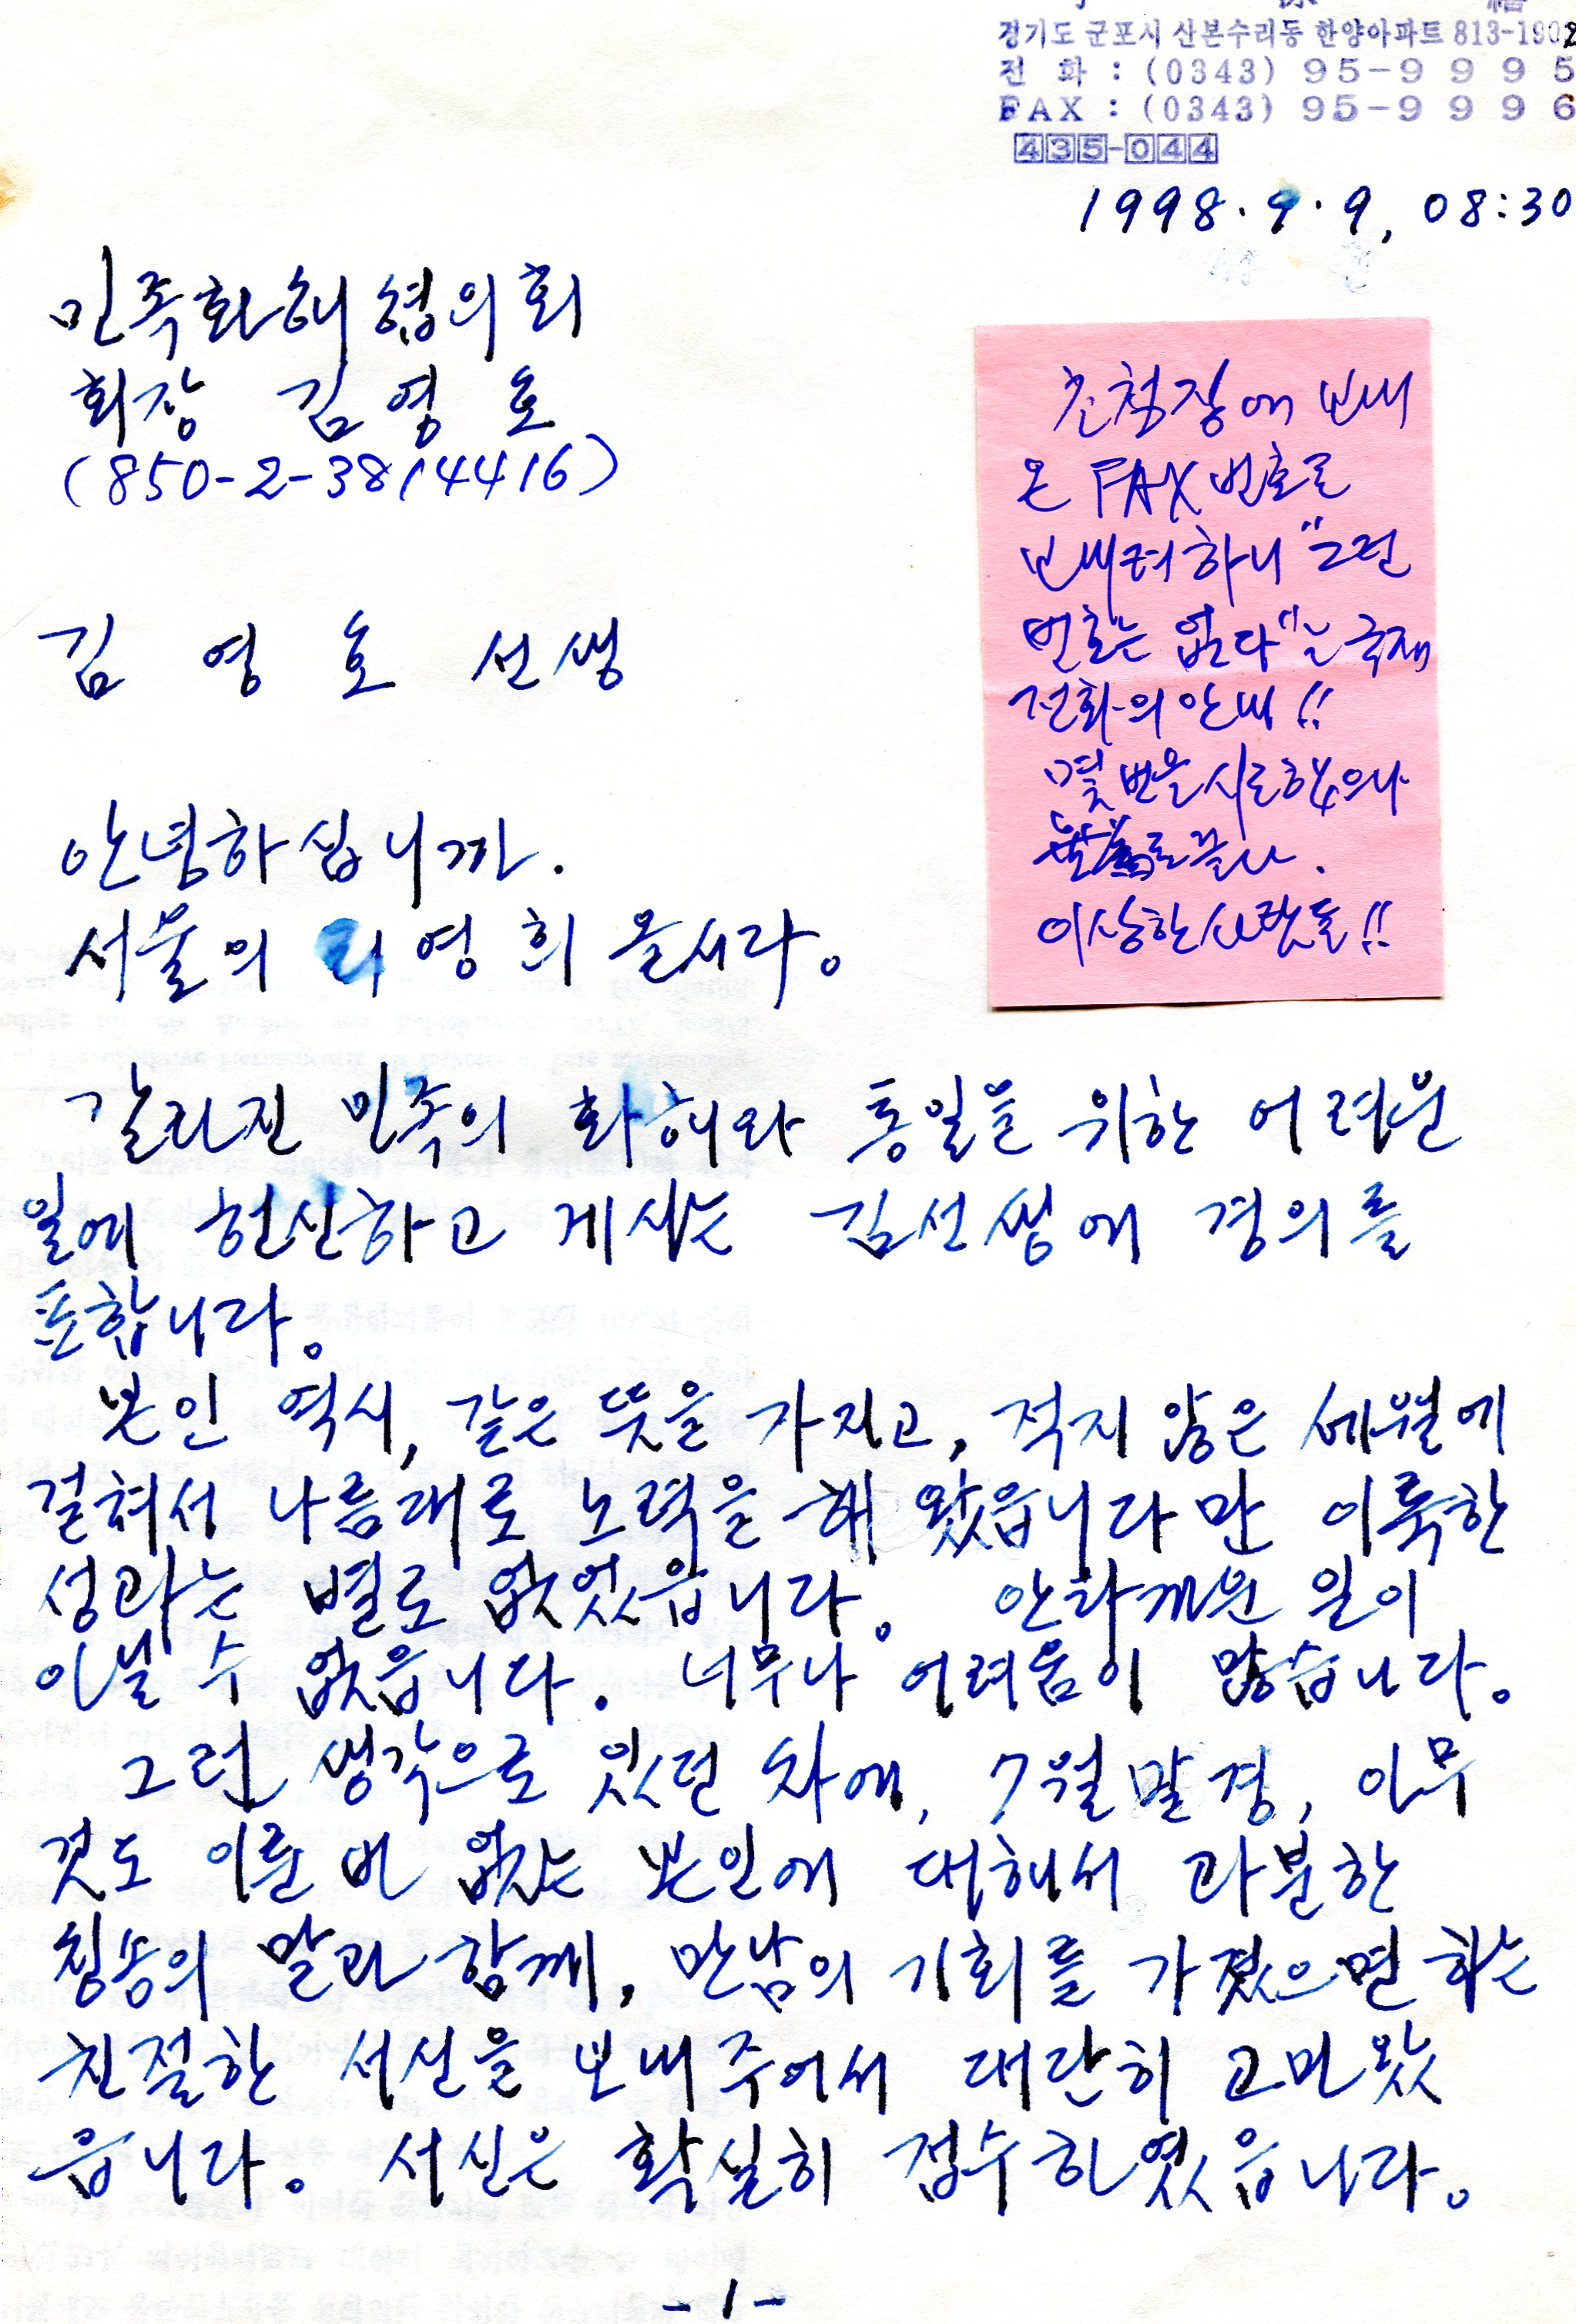 민화협-김영호회장에게-보내는-서신-1998.jpg